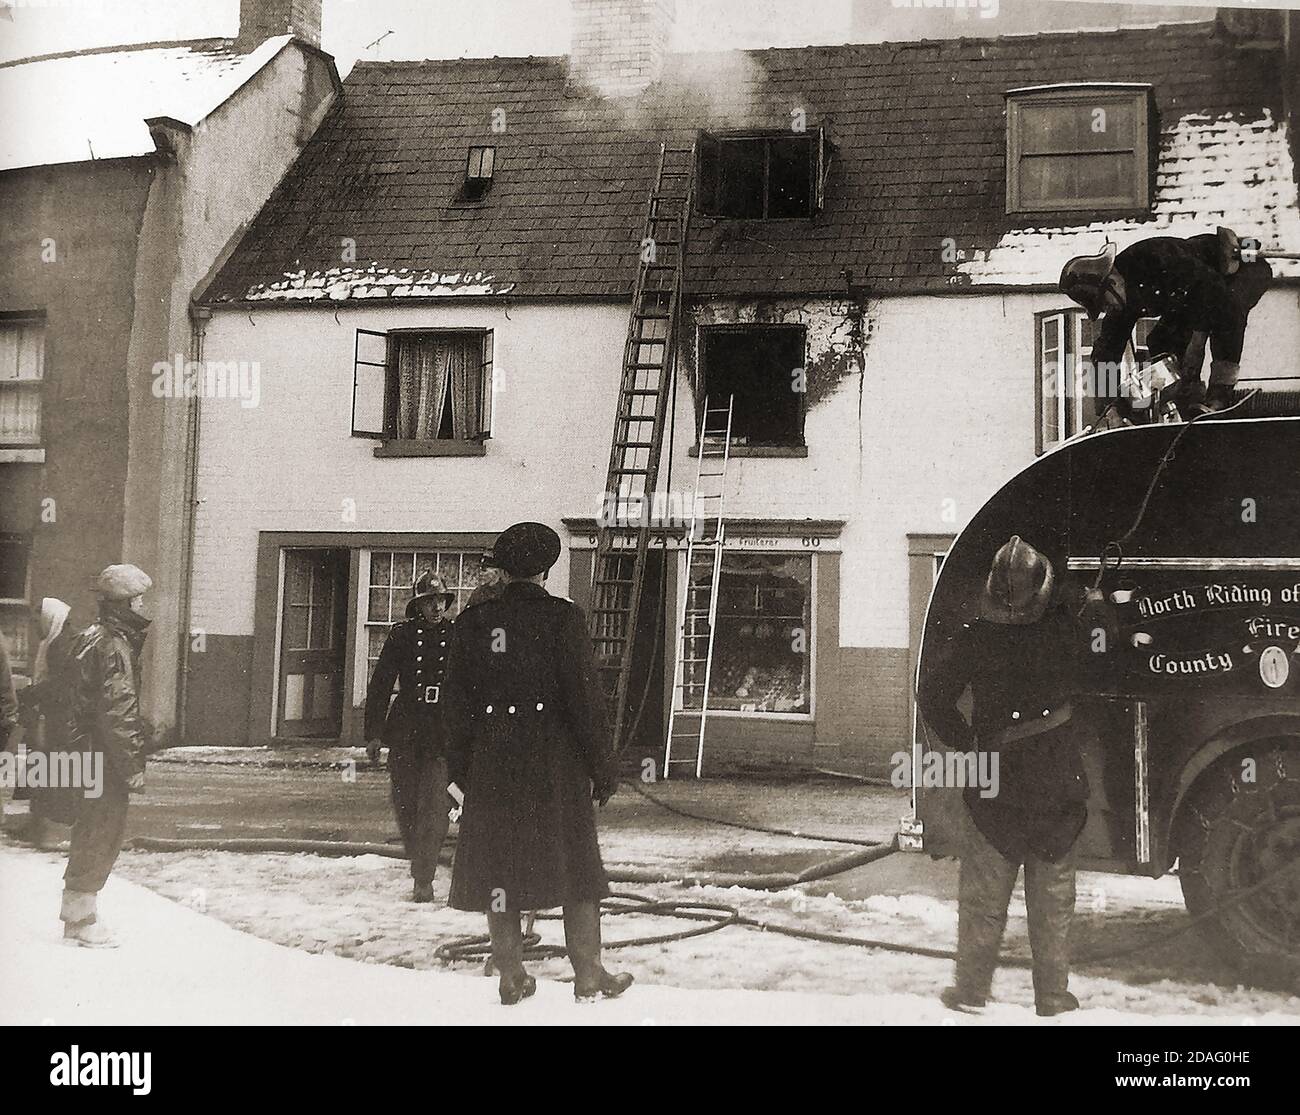 Une photo d'époque montrant une équipe de pompiers de North Riding of Yorkshire (Royaume-Uni), s'attaquant à un feu au-dessus de la boutique de fruits de Paylor, Church Street, Whitby, North Yorkshire avec de la neige au sol. Banque D'Images